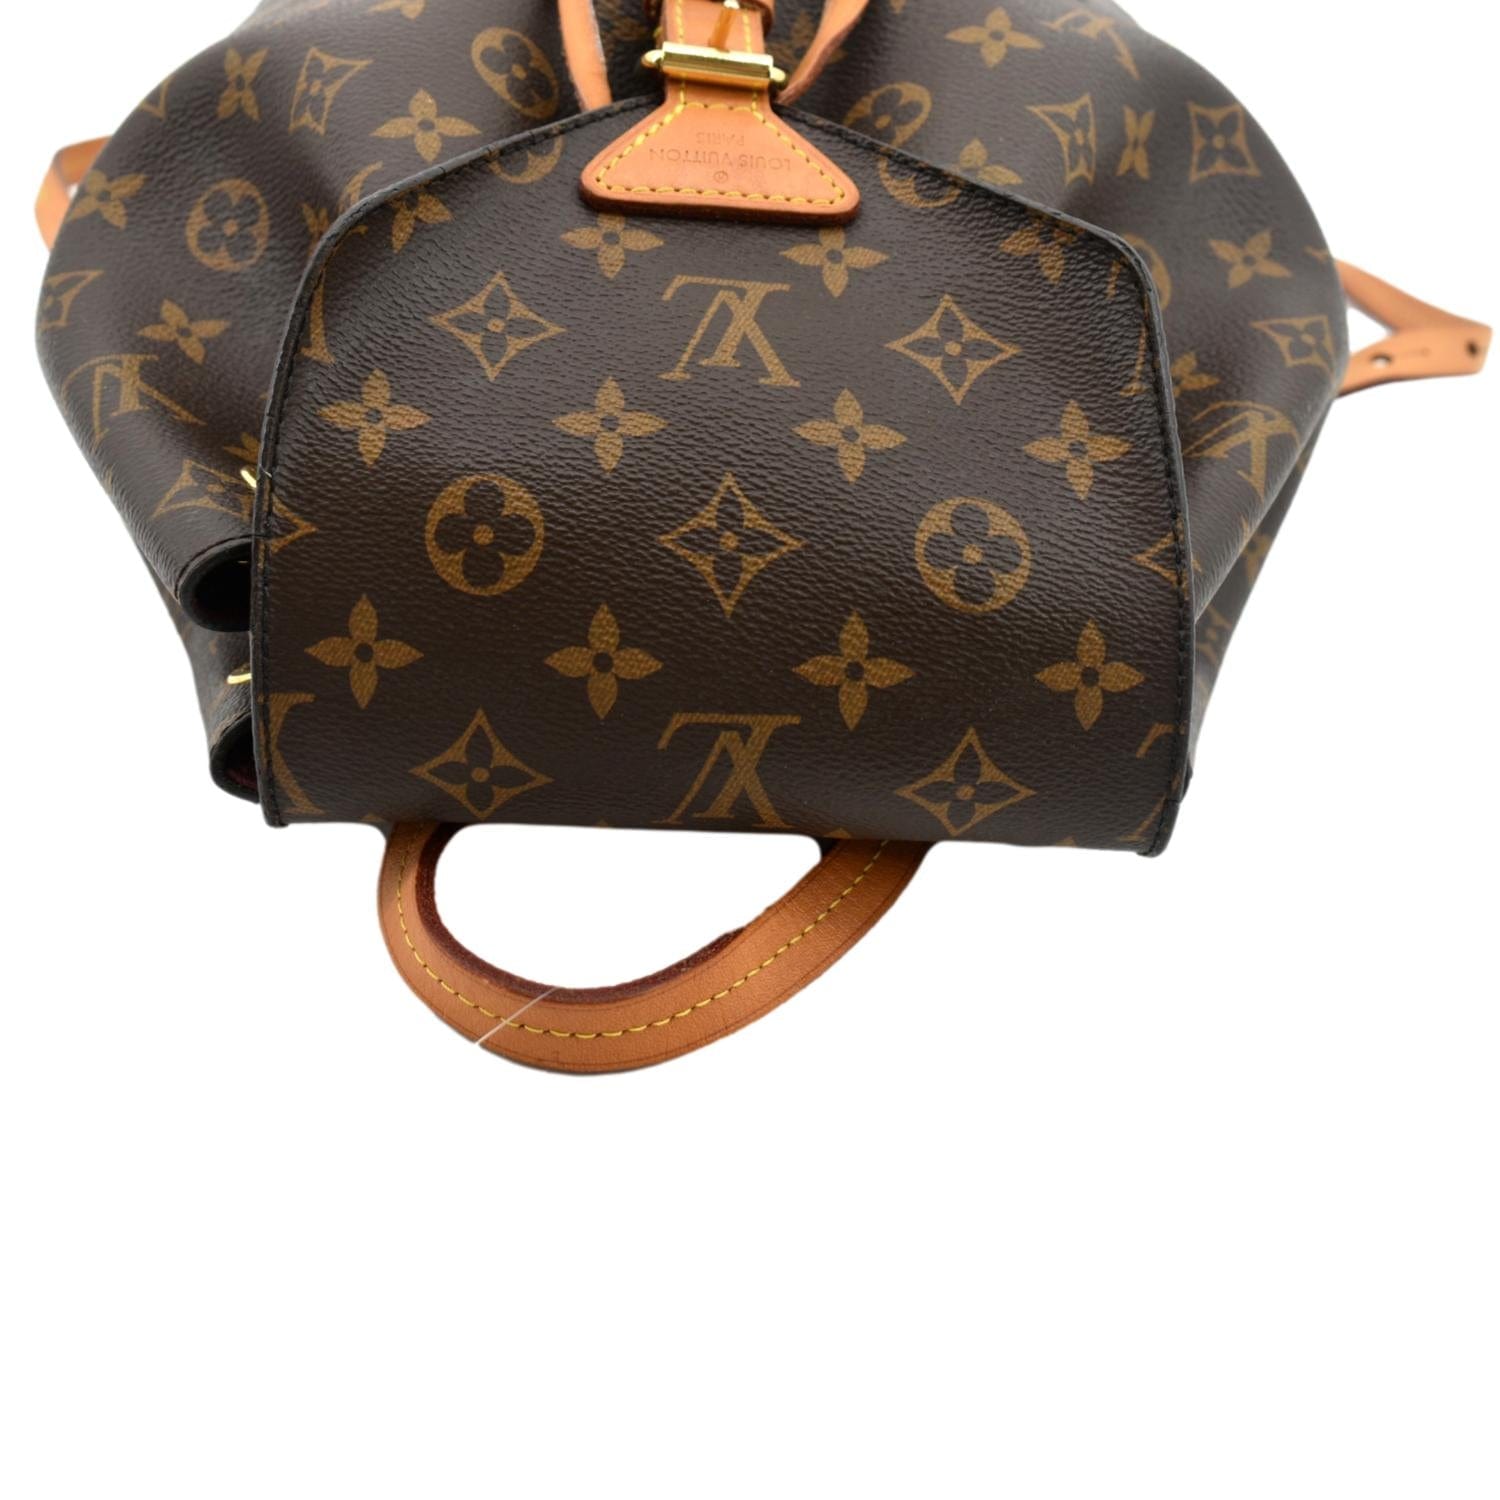 Louis Vuitton Montsouris Monogram Canvas Backpack Bag